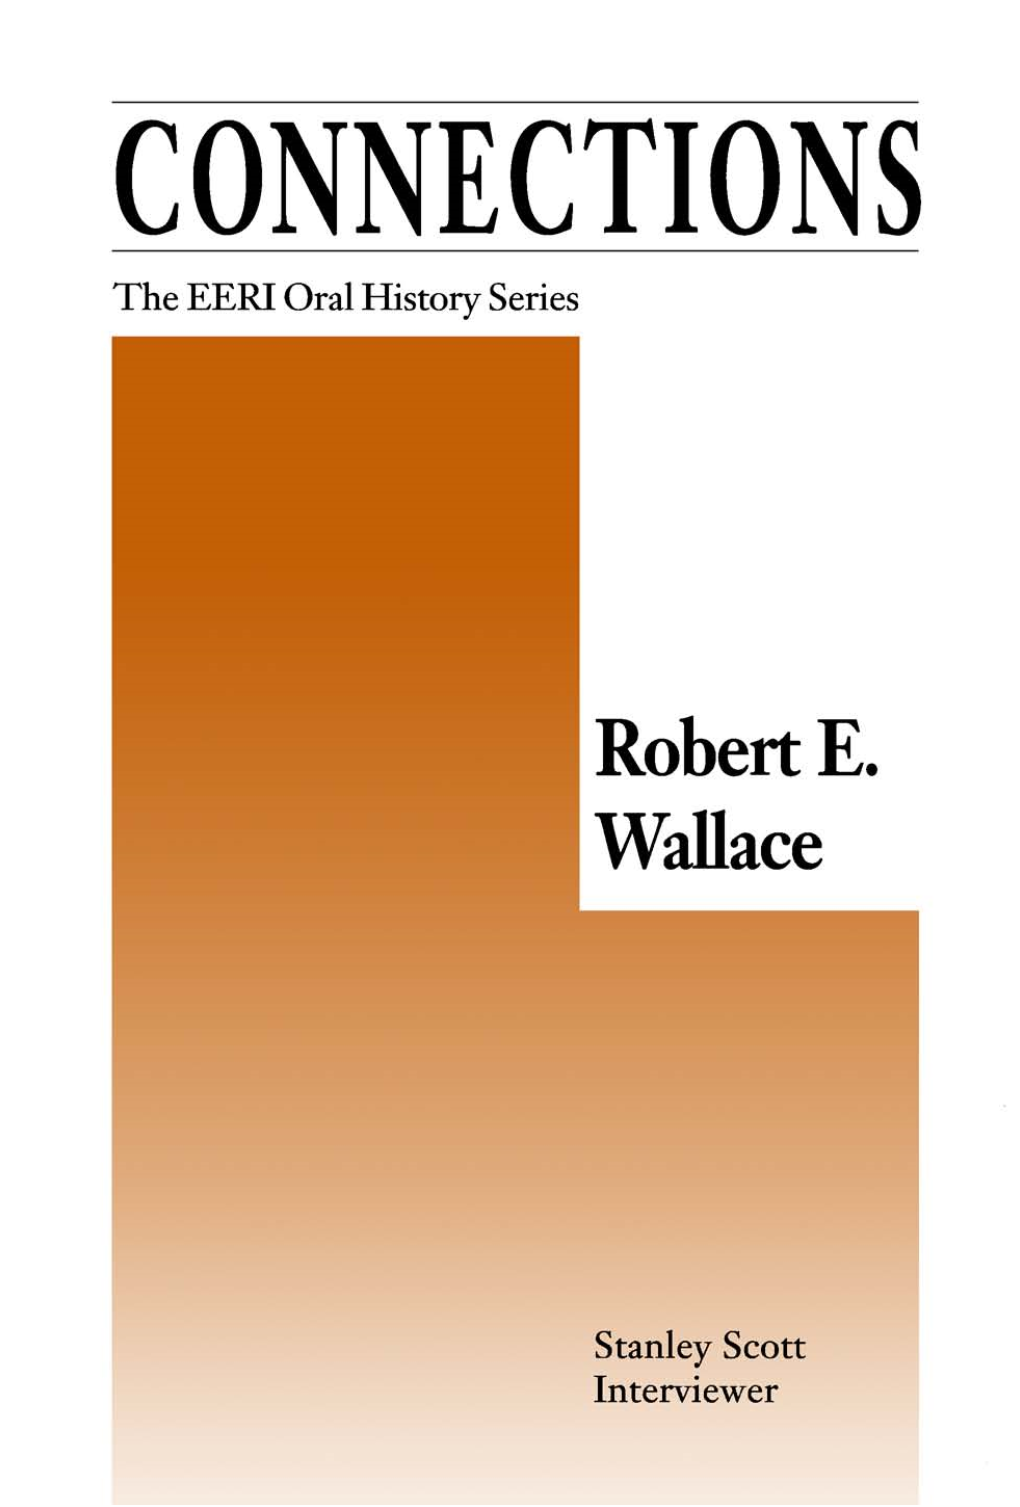 The EERI Oral History Series